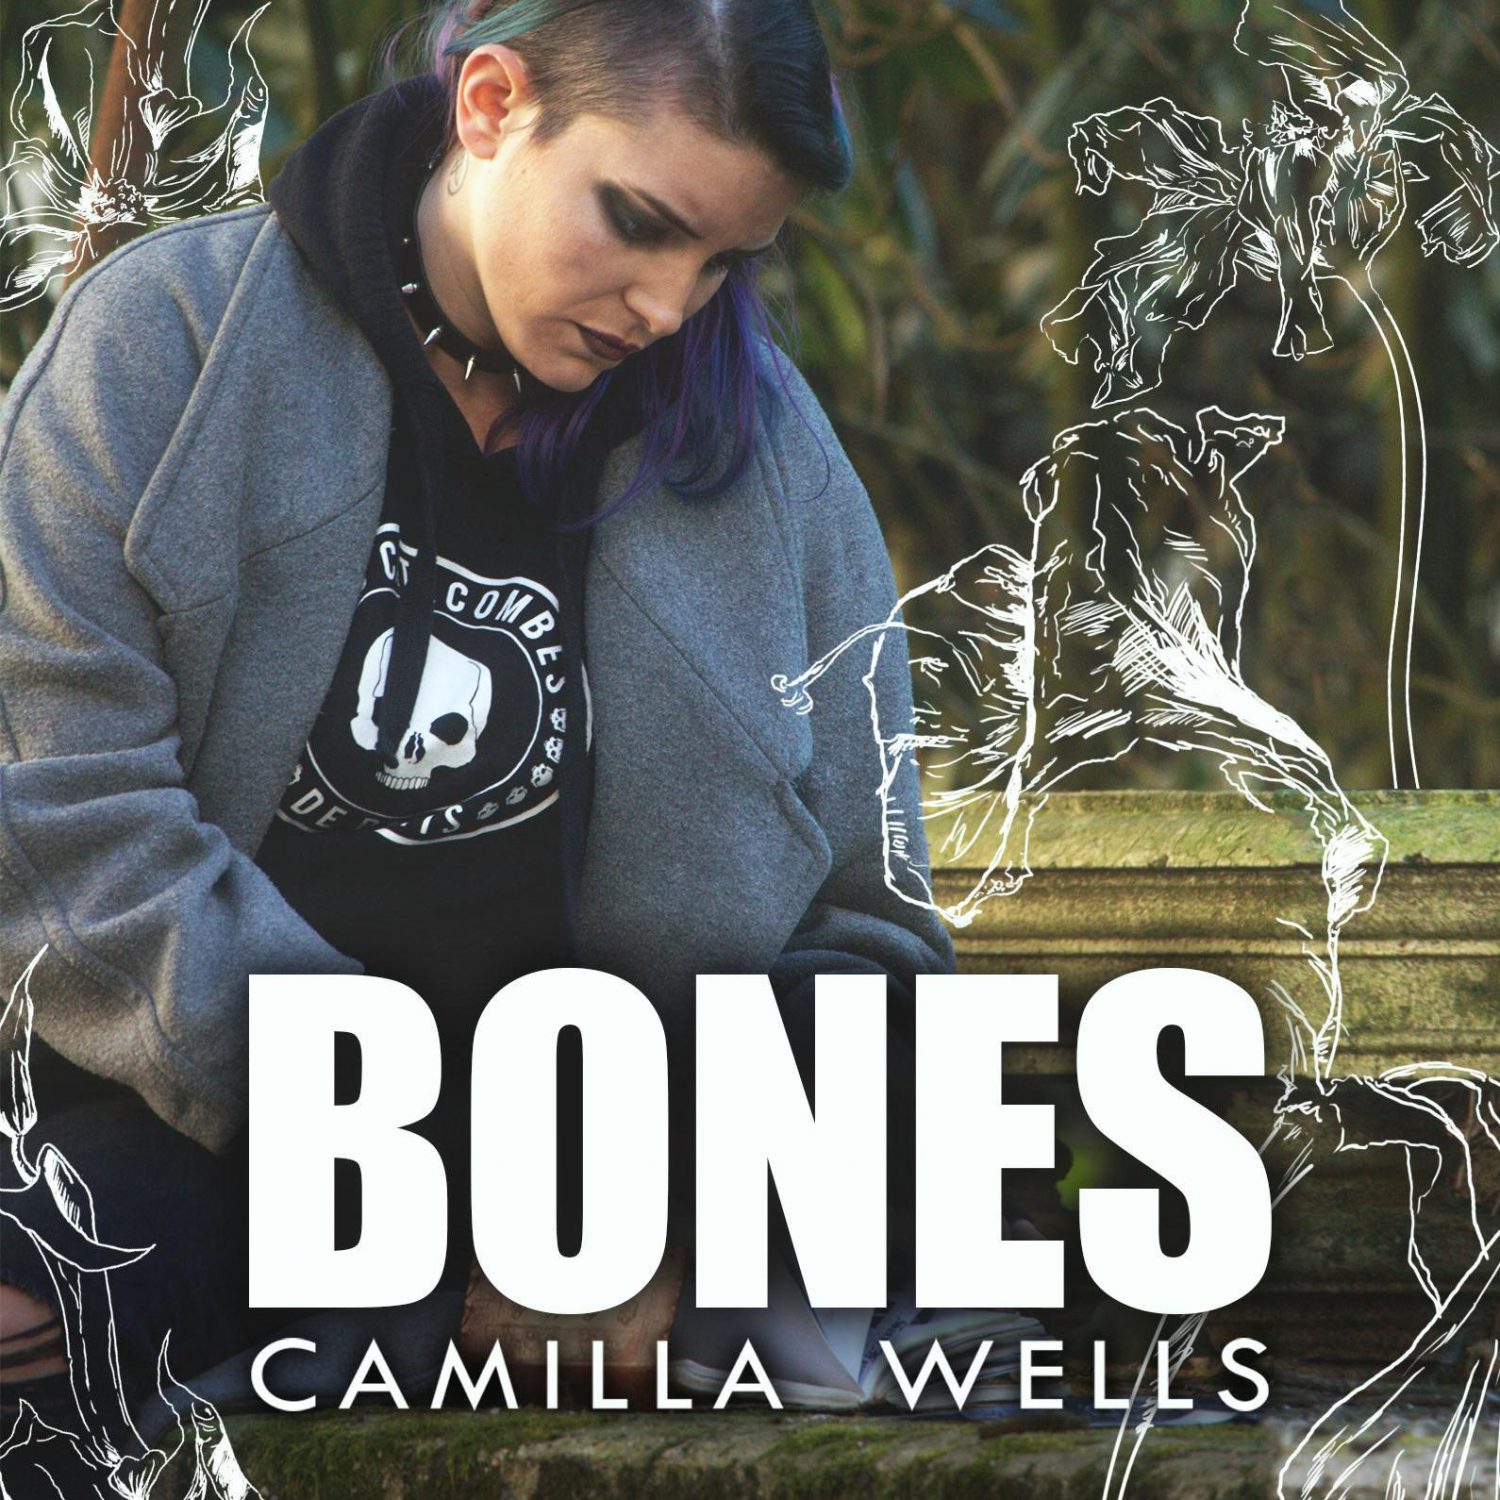 Camilla Wells